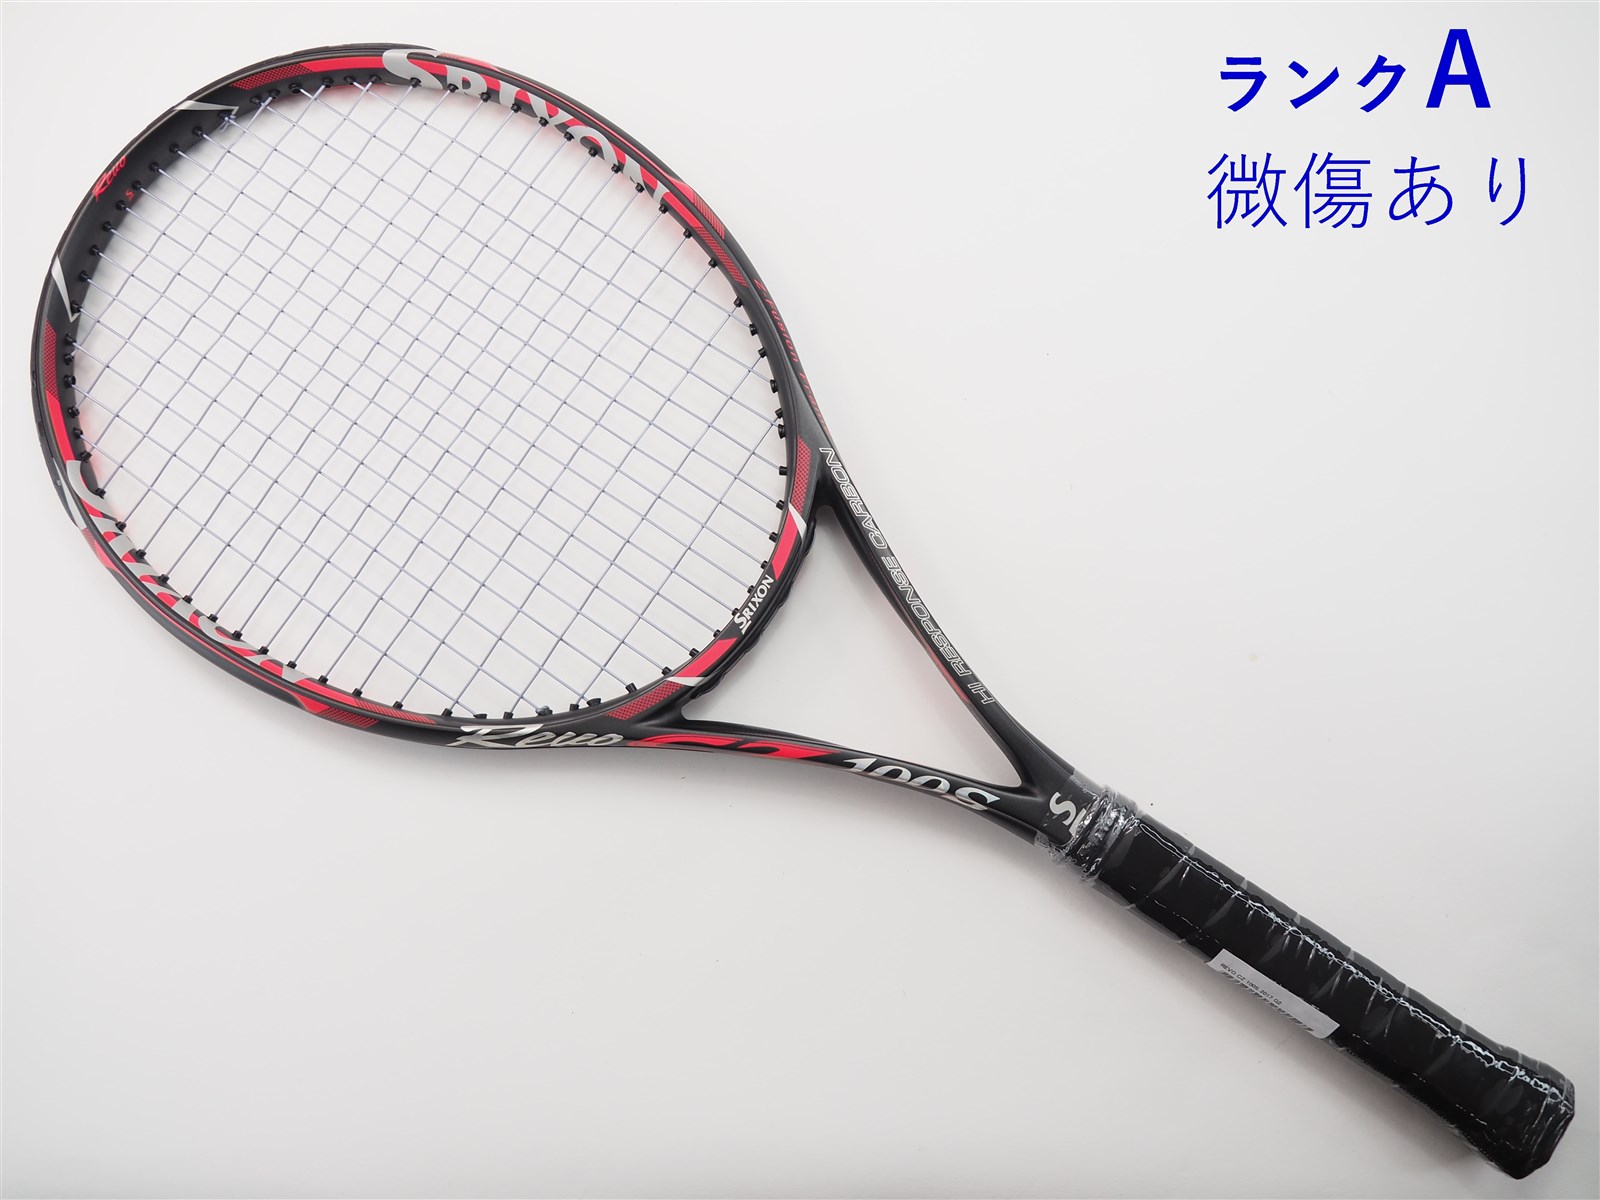 ダンロップ スリクソン 硬式テニスラケット REVO S 10.0 - スポーツ別